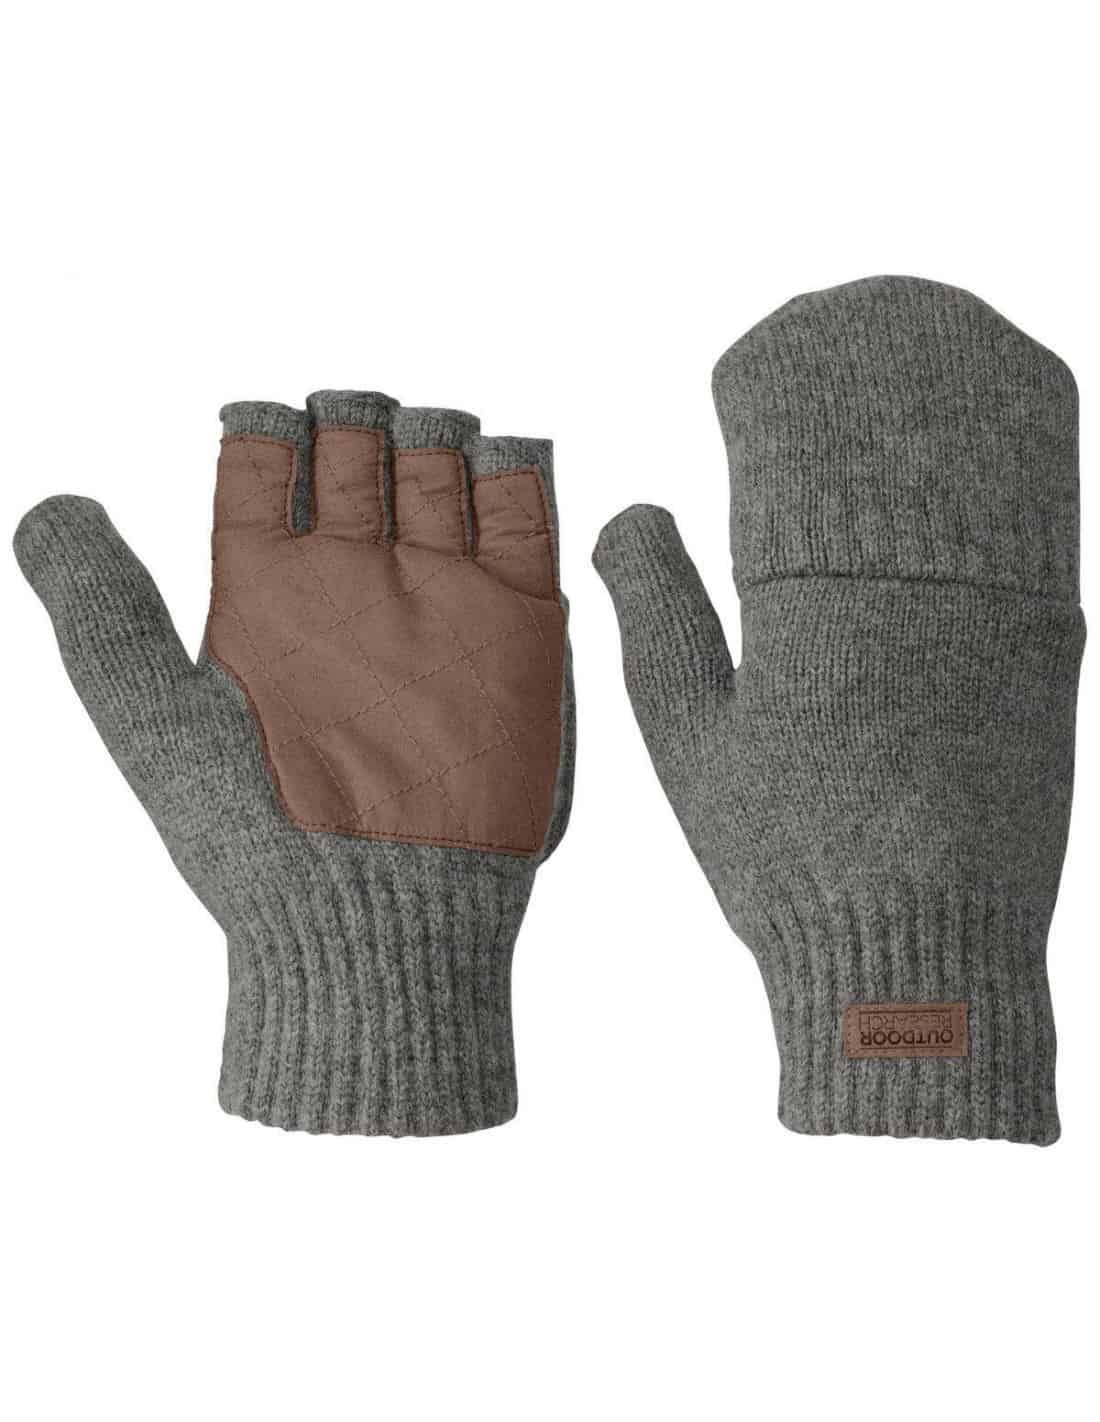 Mitaine homme cuir  Fingerless mittens, Fingerless, Gloves